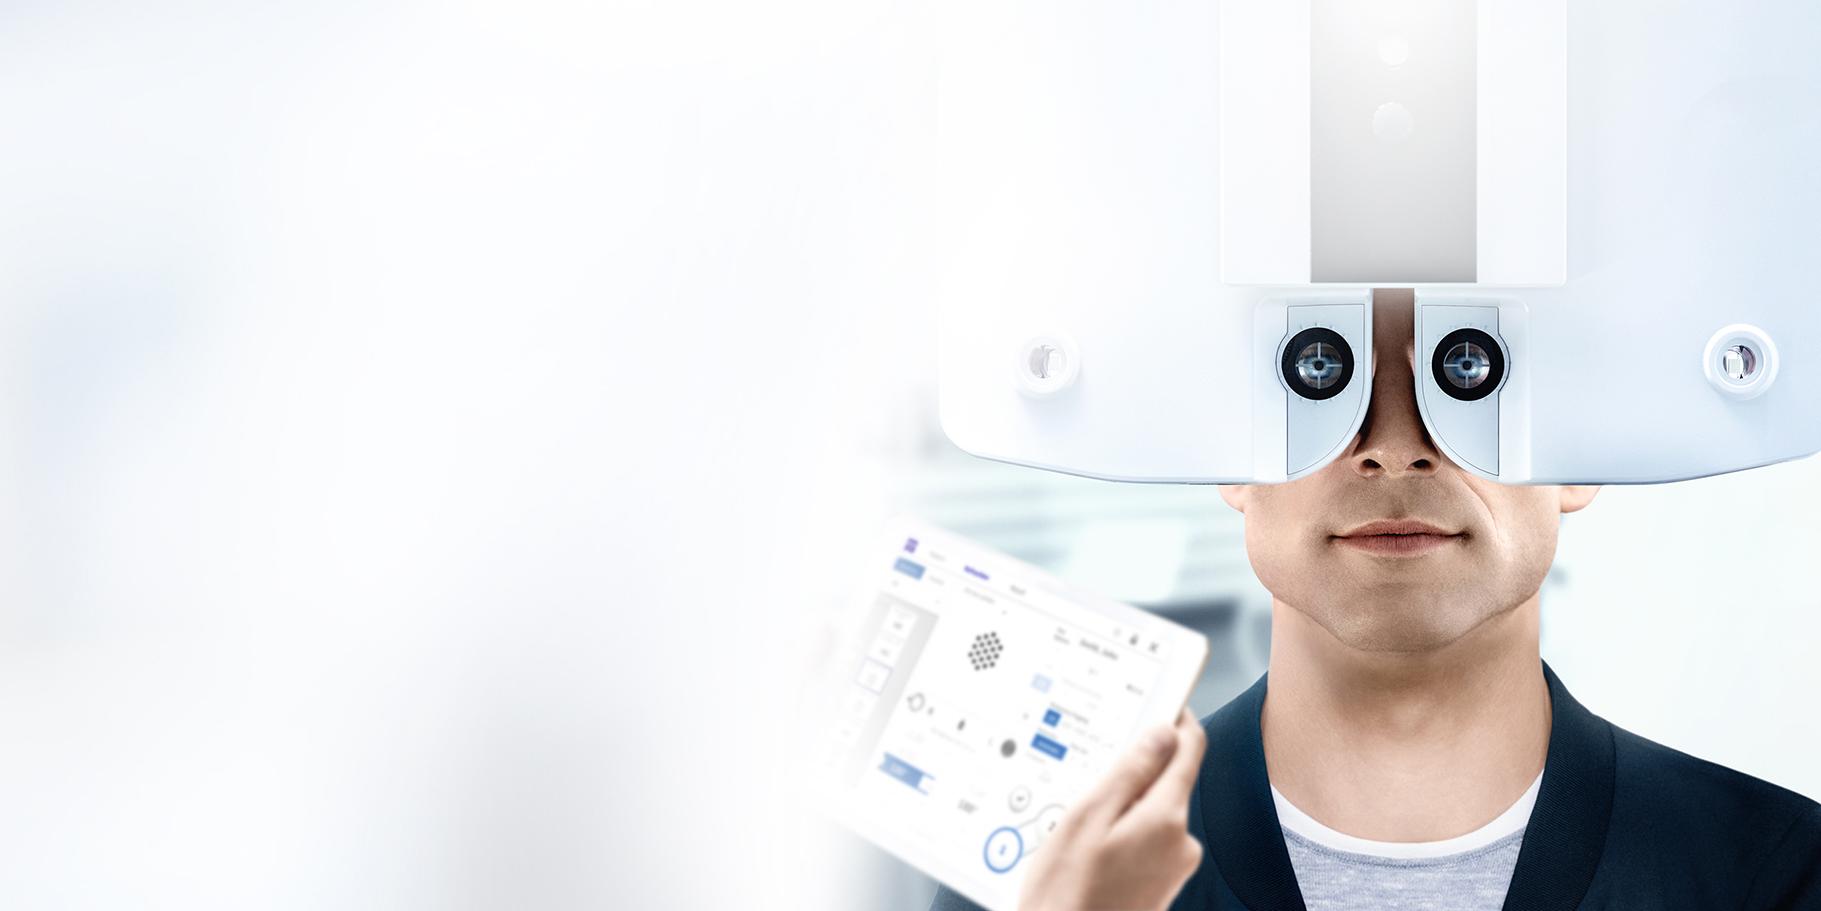 자이스 자각식 굴절검사 기기는 굴절검사 과정에서 안경원과 고객의 귀중한 시간을 절약해주며 심각한 편차 위험을 줄여줍니다.